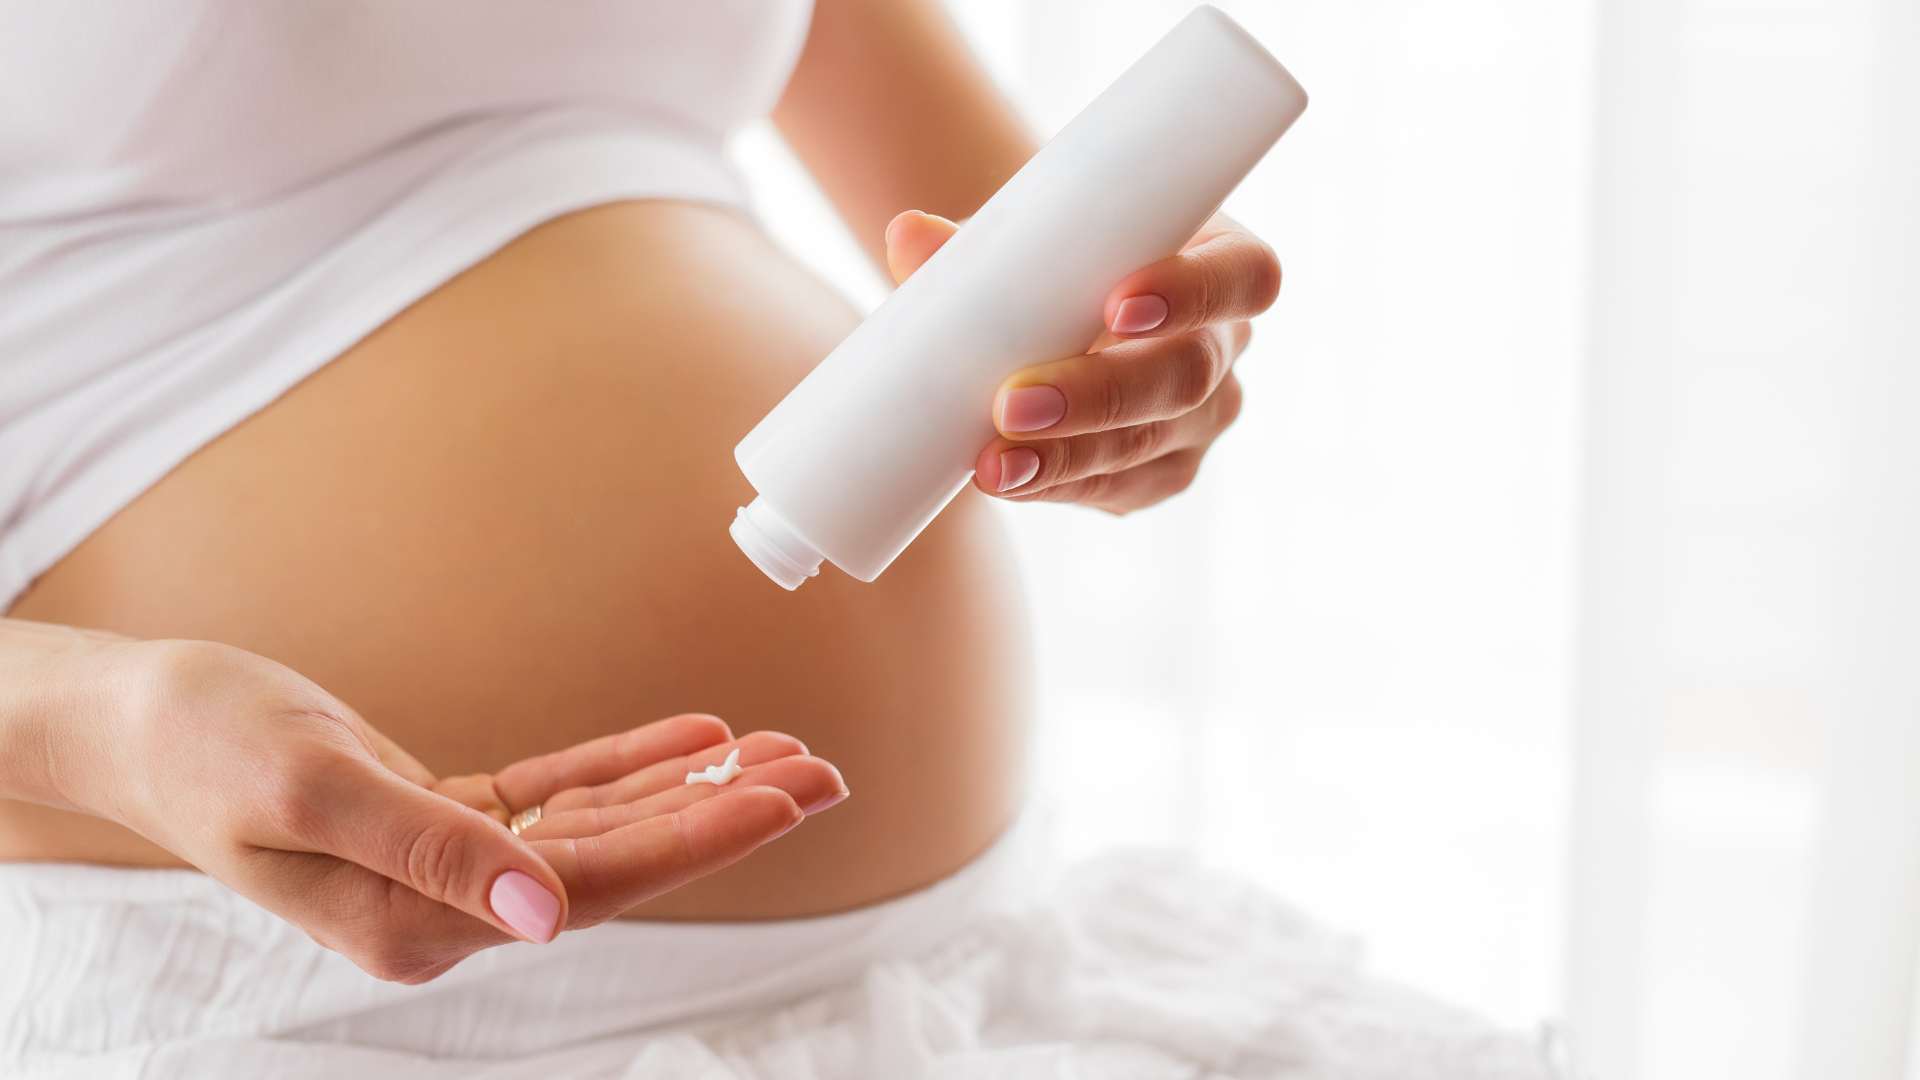 Kozmetika tijekom trudnoće